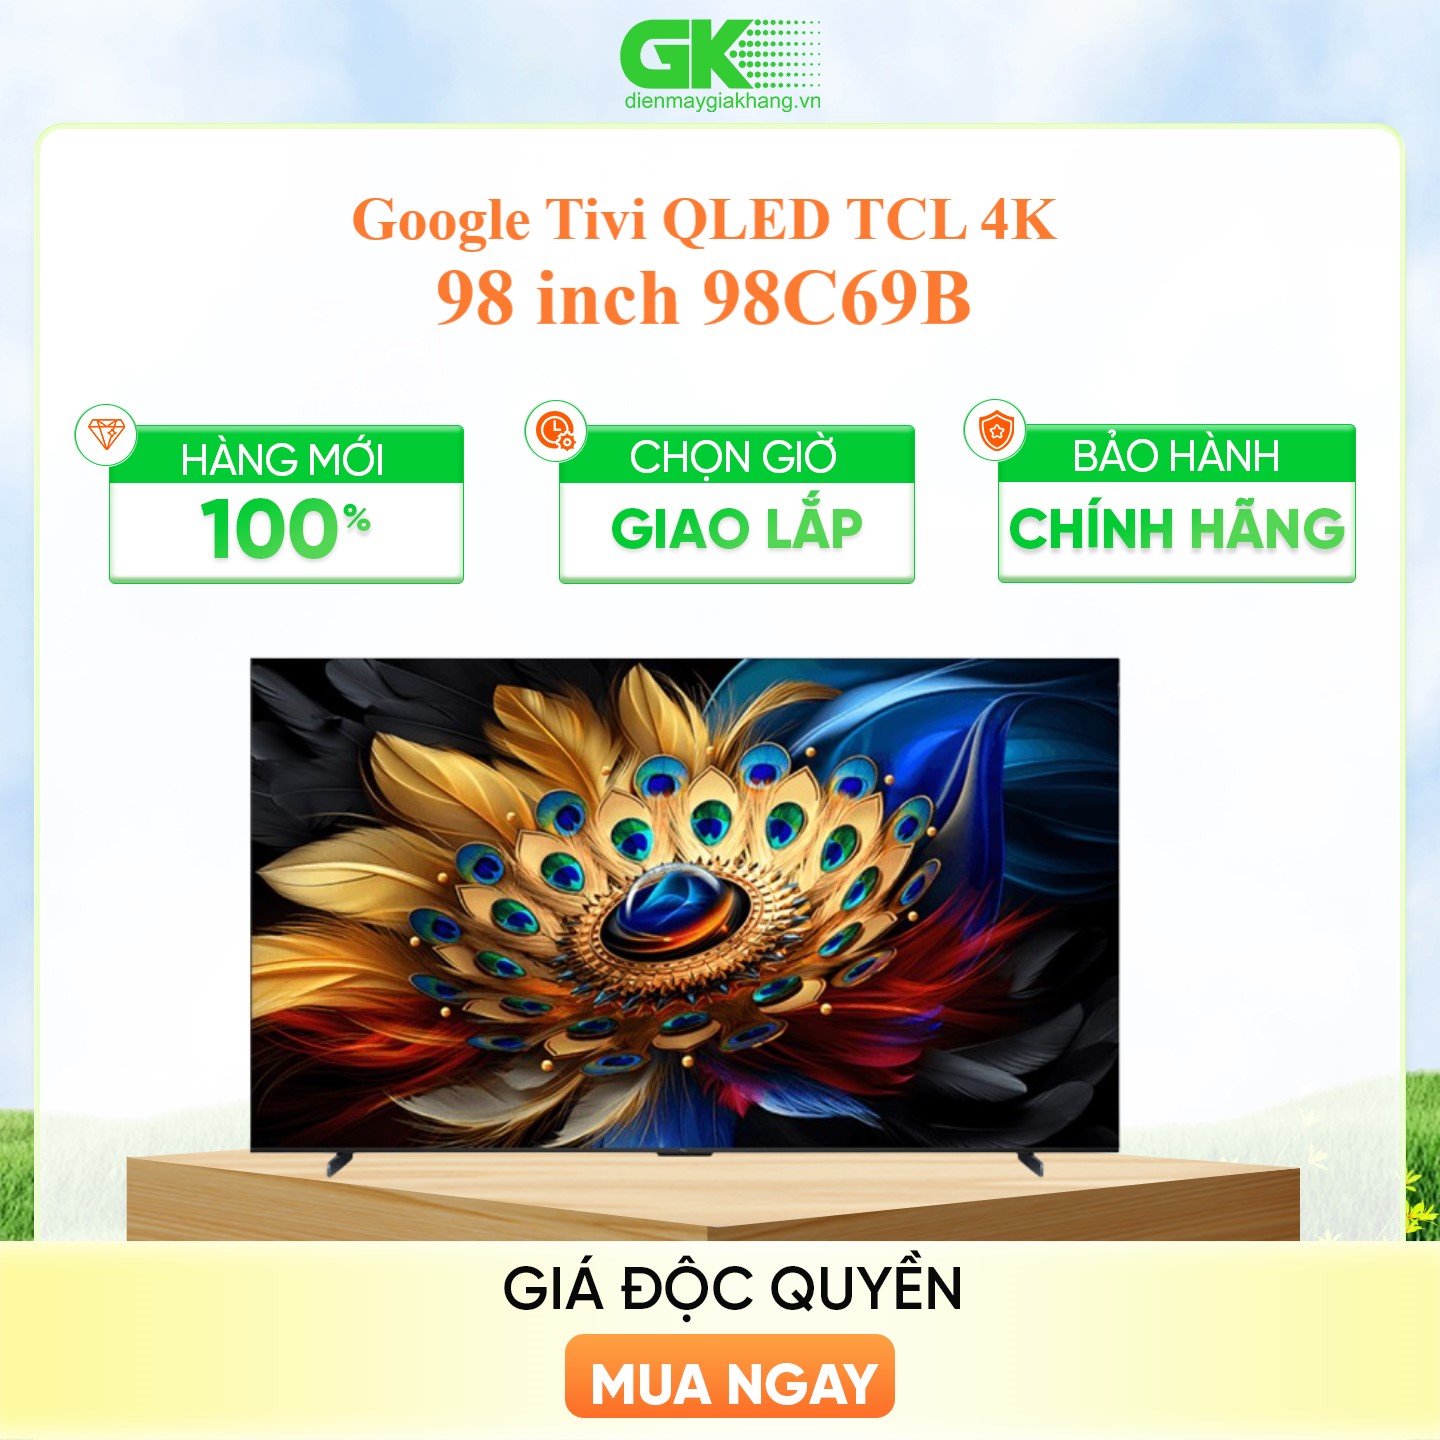 98C69B - Google Tivi QLED TCL 4K 98 inch 98C69B - Hàng Chính Hãng - Chỉ Giao Hồ Chí Minh